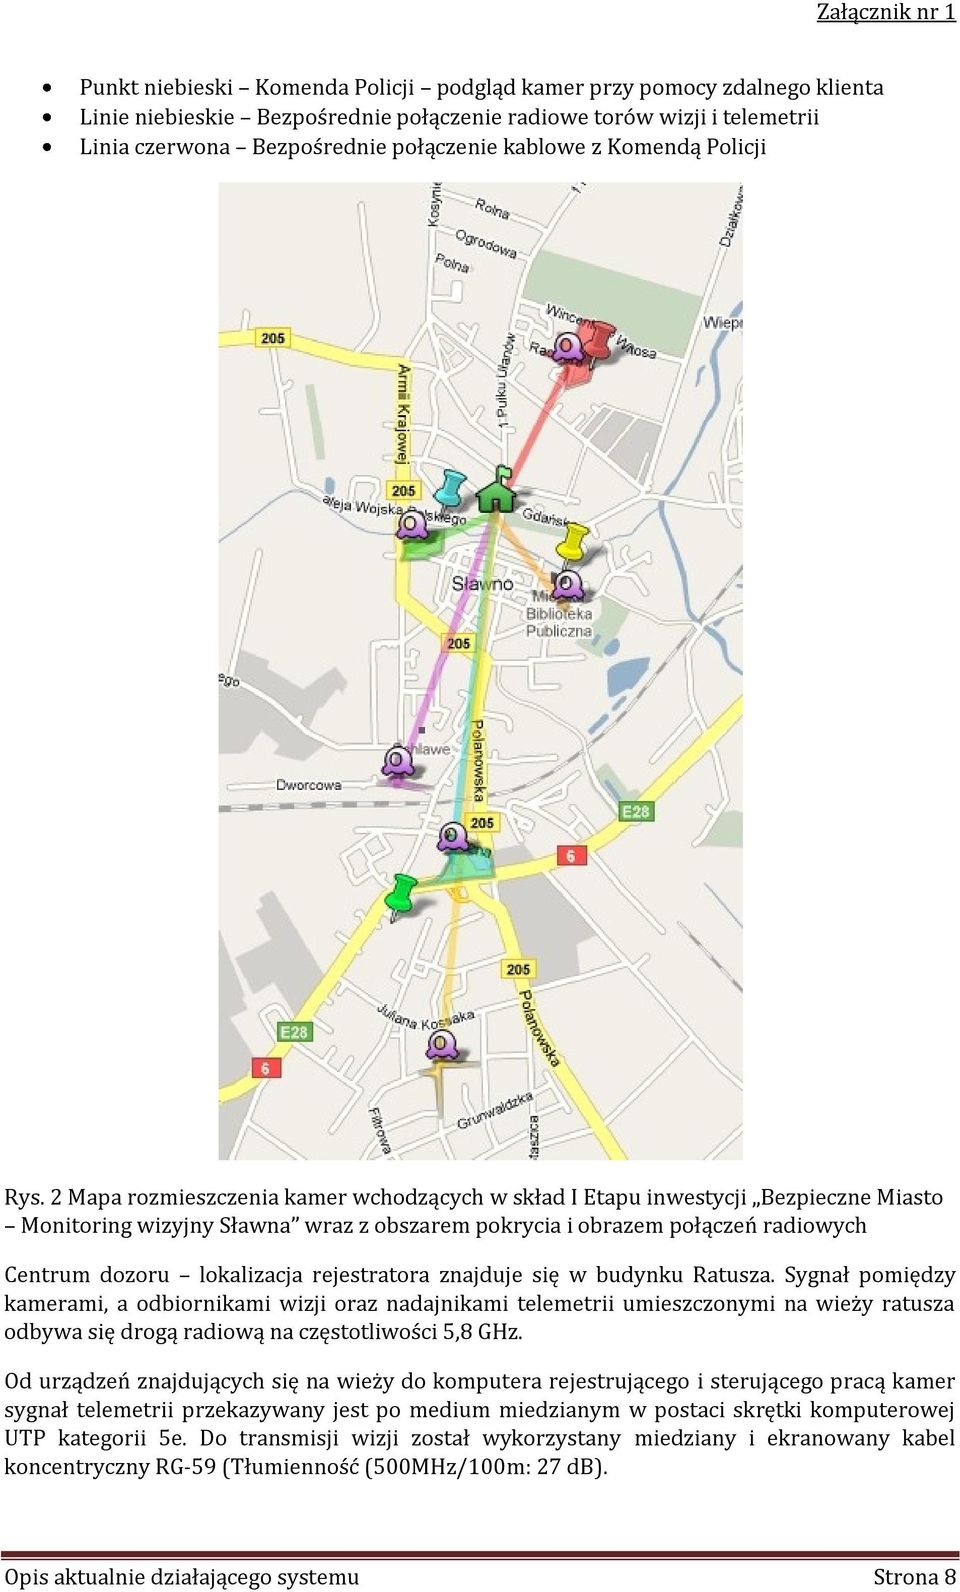 2 Mapa rozmieszczenia kamer wchodzących w skład I Etapu inwestycji Bezpieczne Miasto Monitoring wizyjny Sławna wraz z obszarem pokrycia i obrazem połączeń radiowych Centrum dozoru lokalizacja